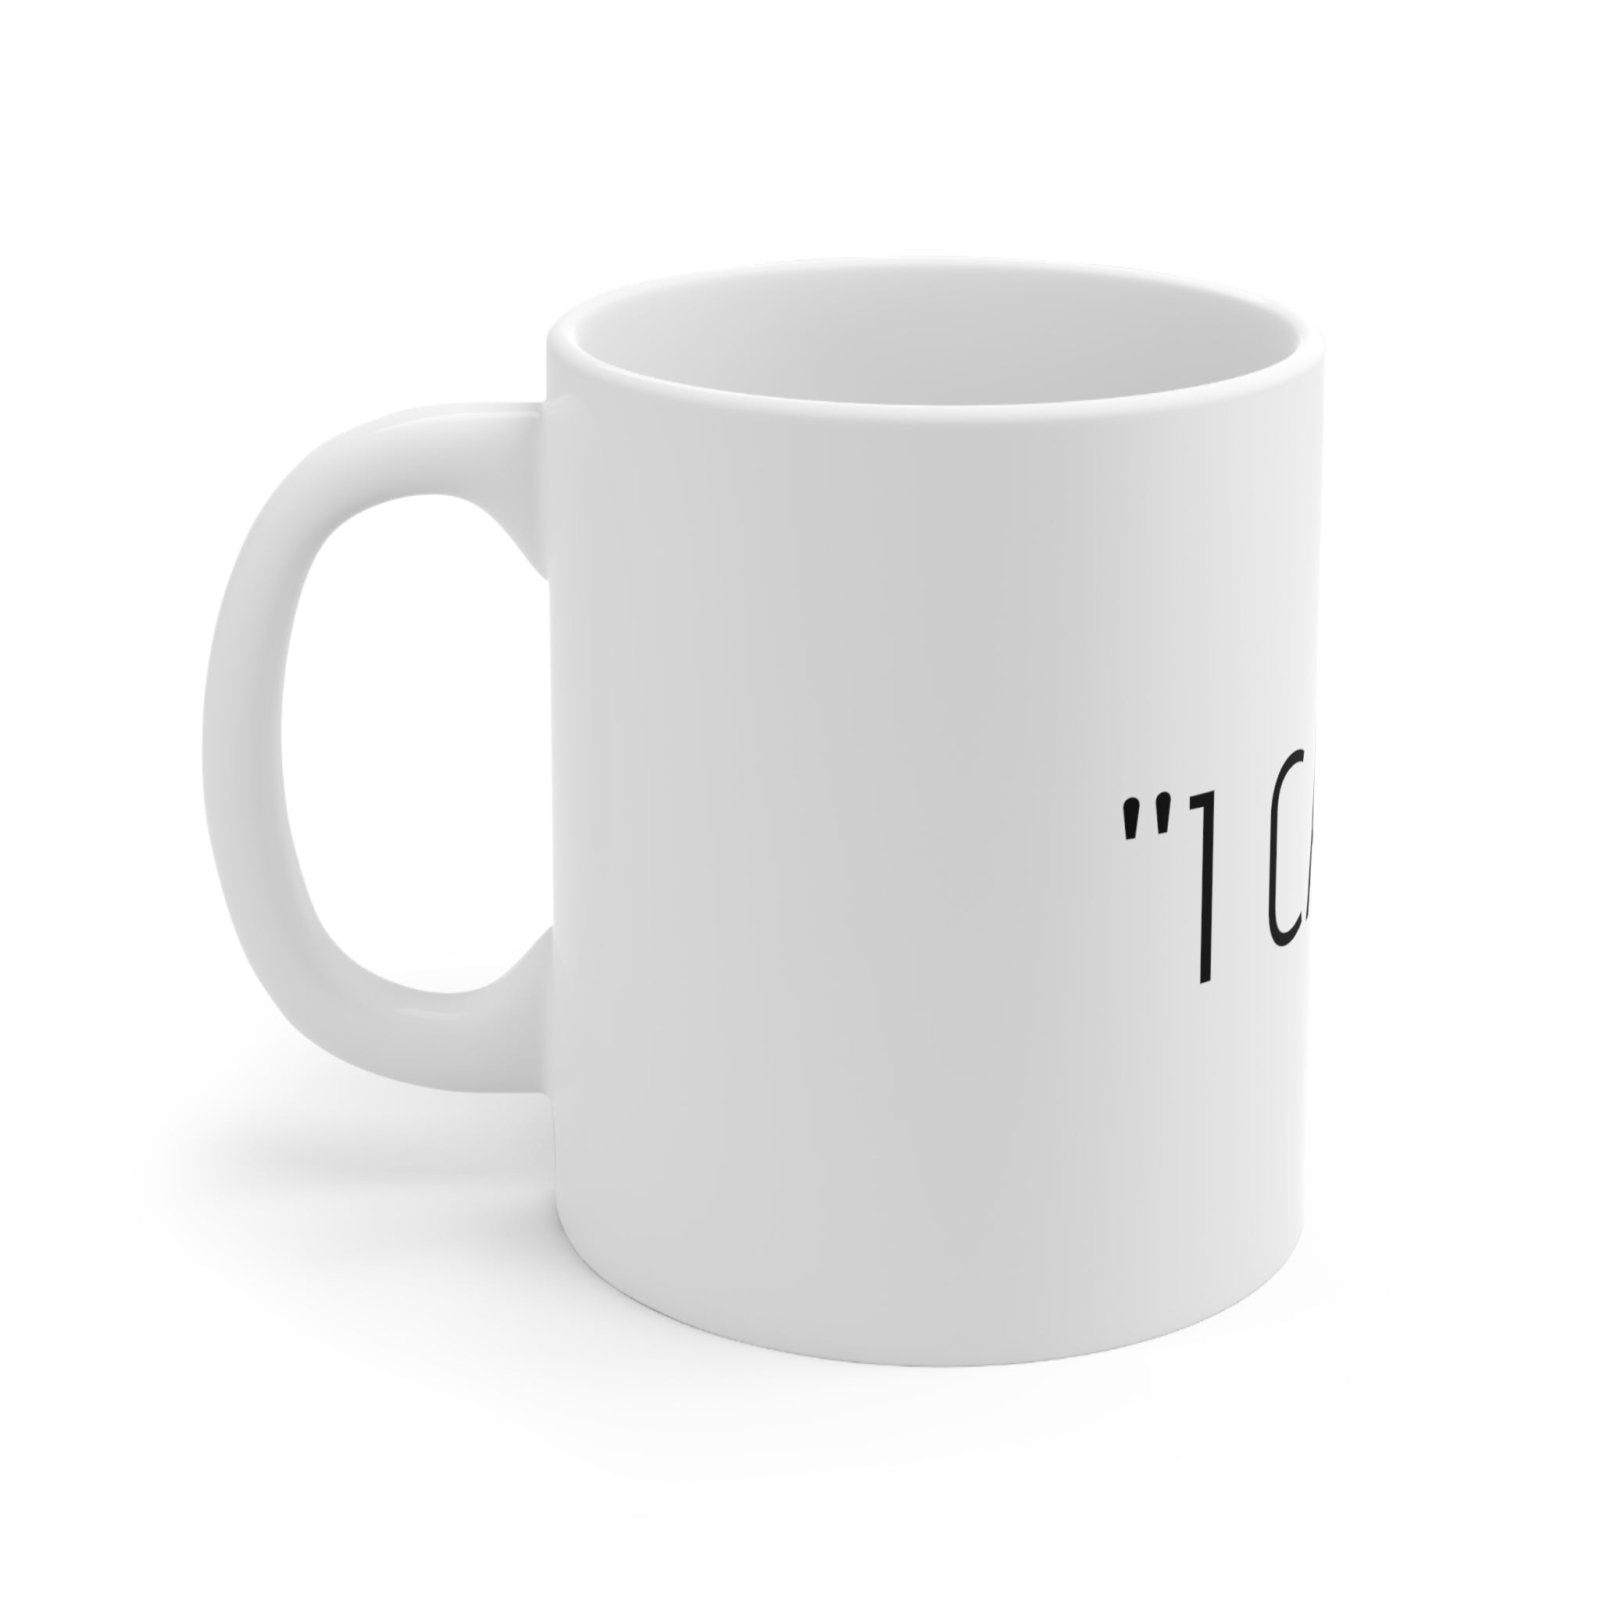 "I CAN'T" Motivational Ceramic Mug 11oz - Dowding